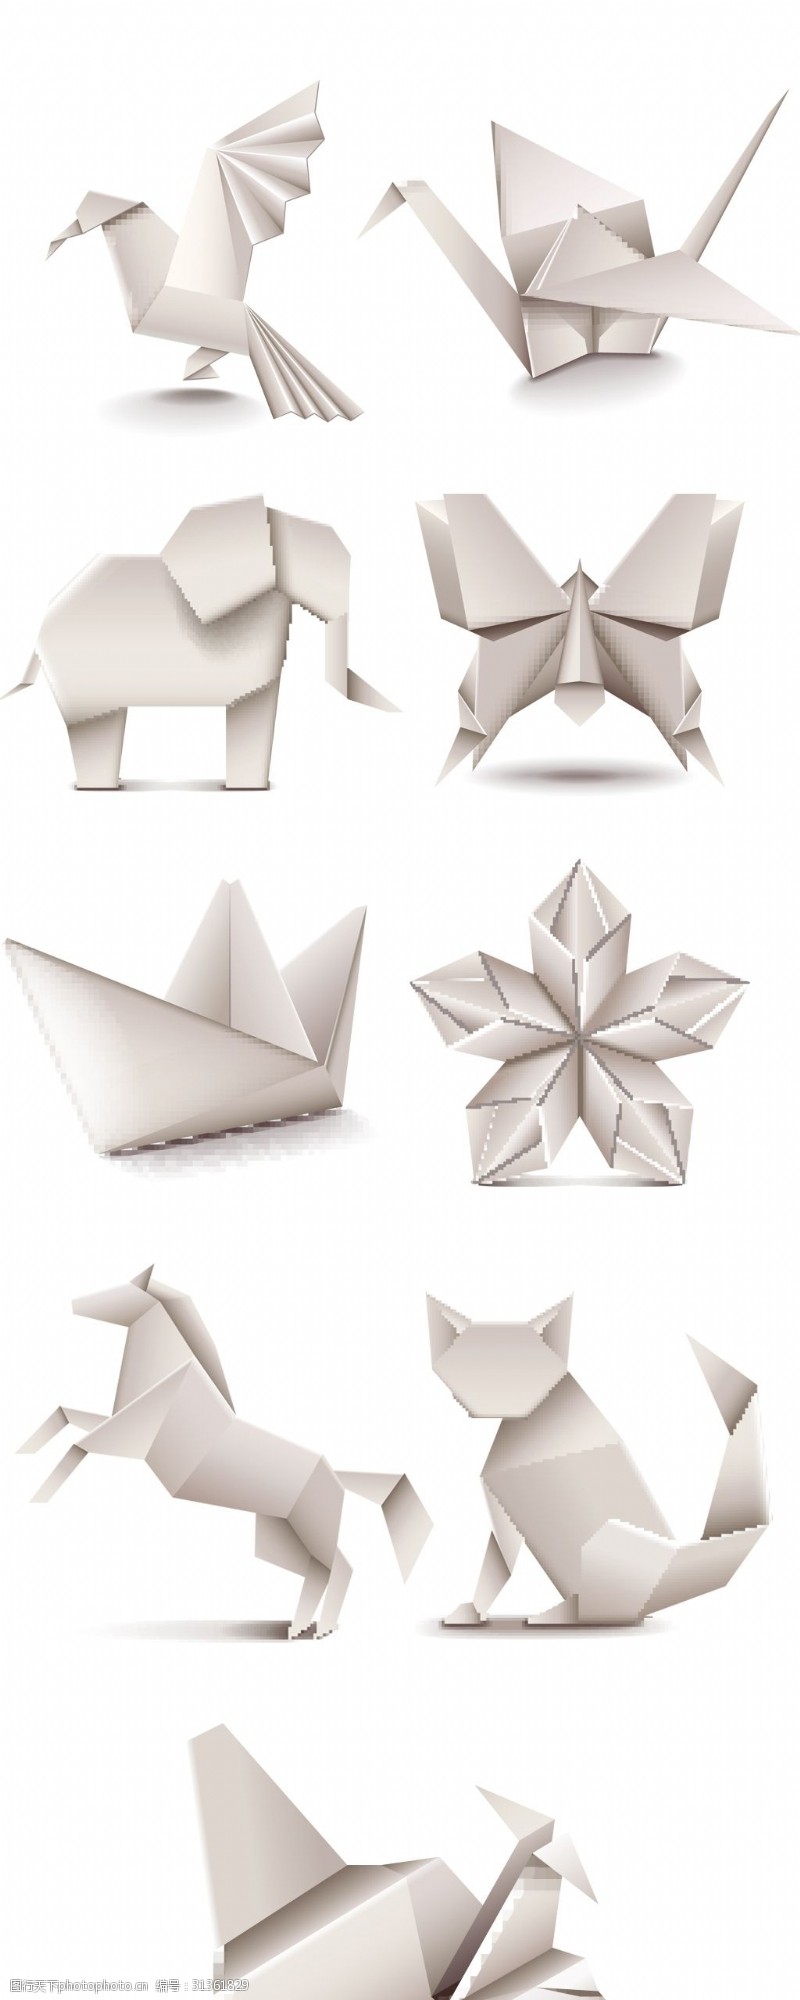 纸张折叠纸折纸折叠千纸鹤动物折纸卡通动物